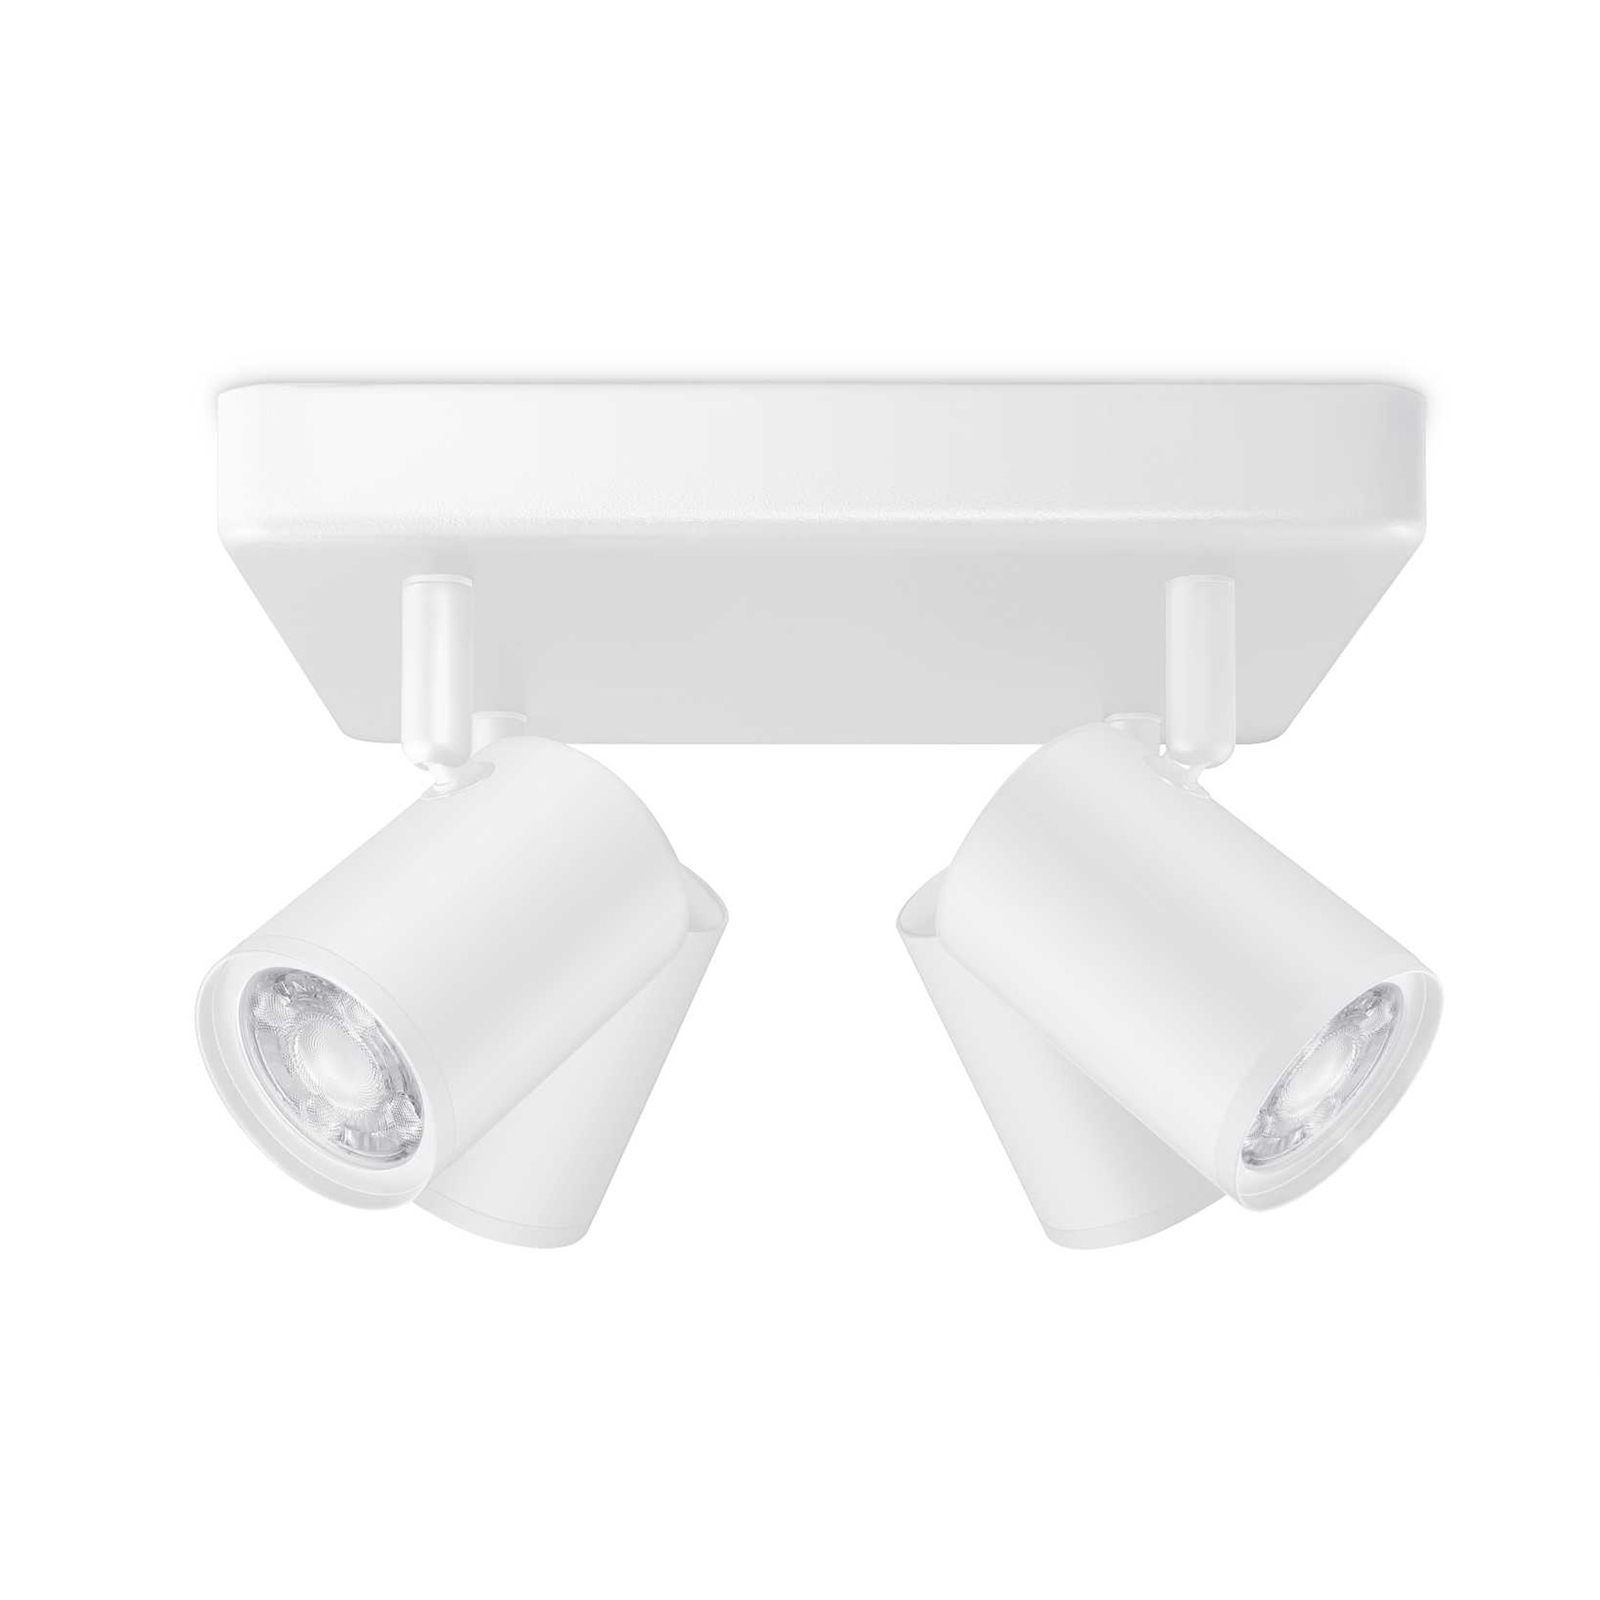 WiZ LED stropní spot Imageo, 4fl square white